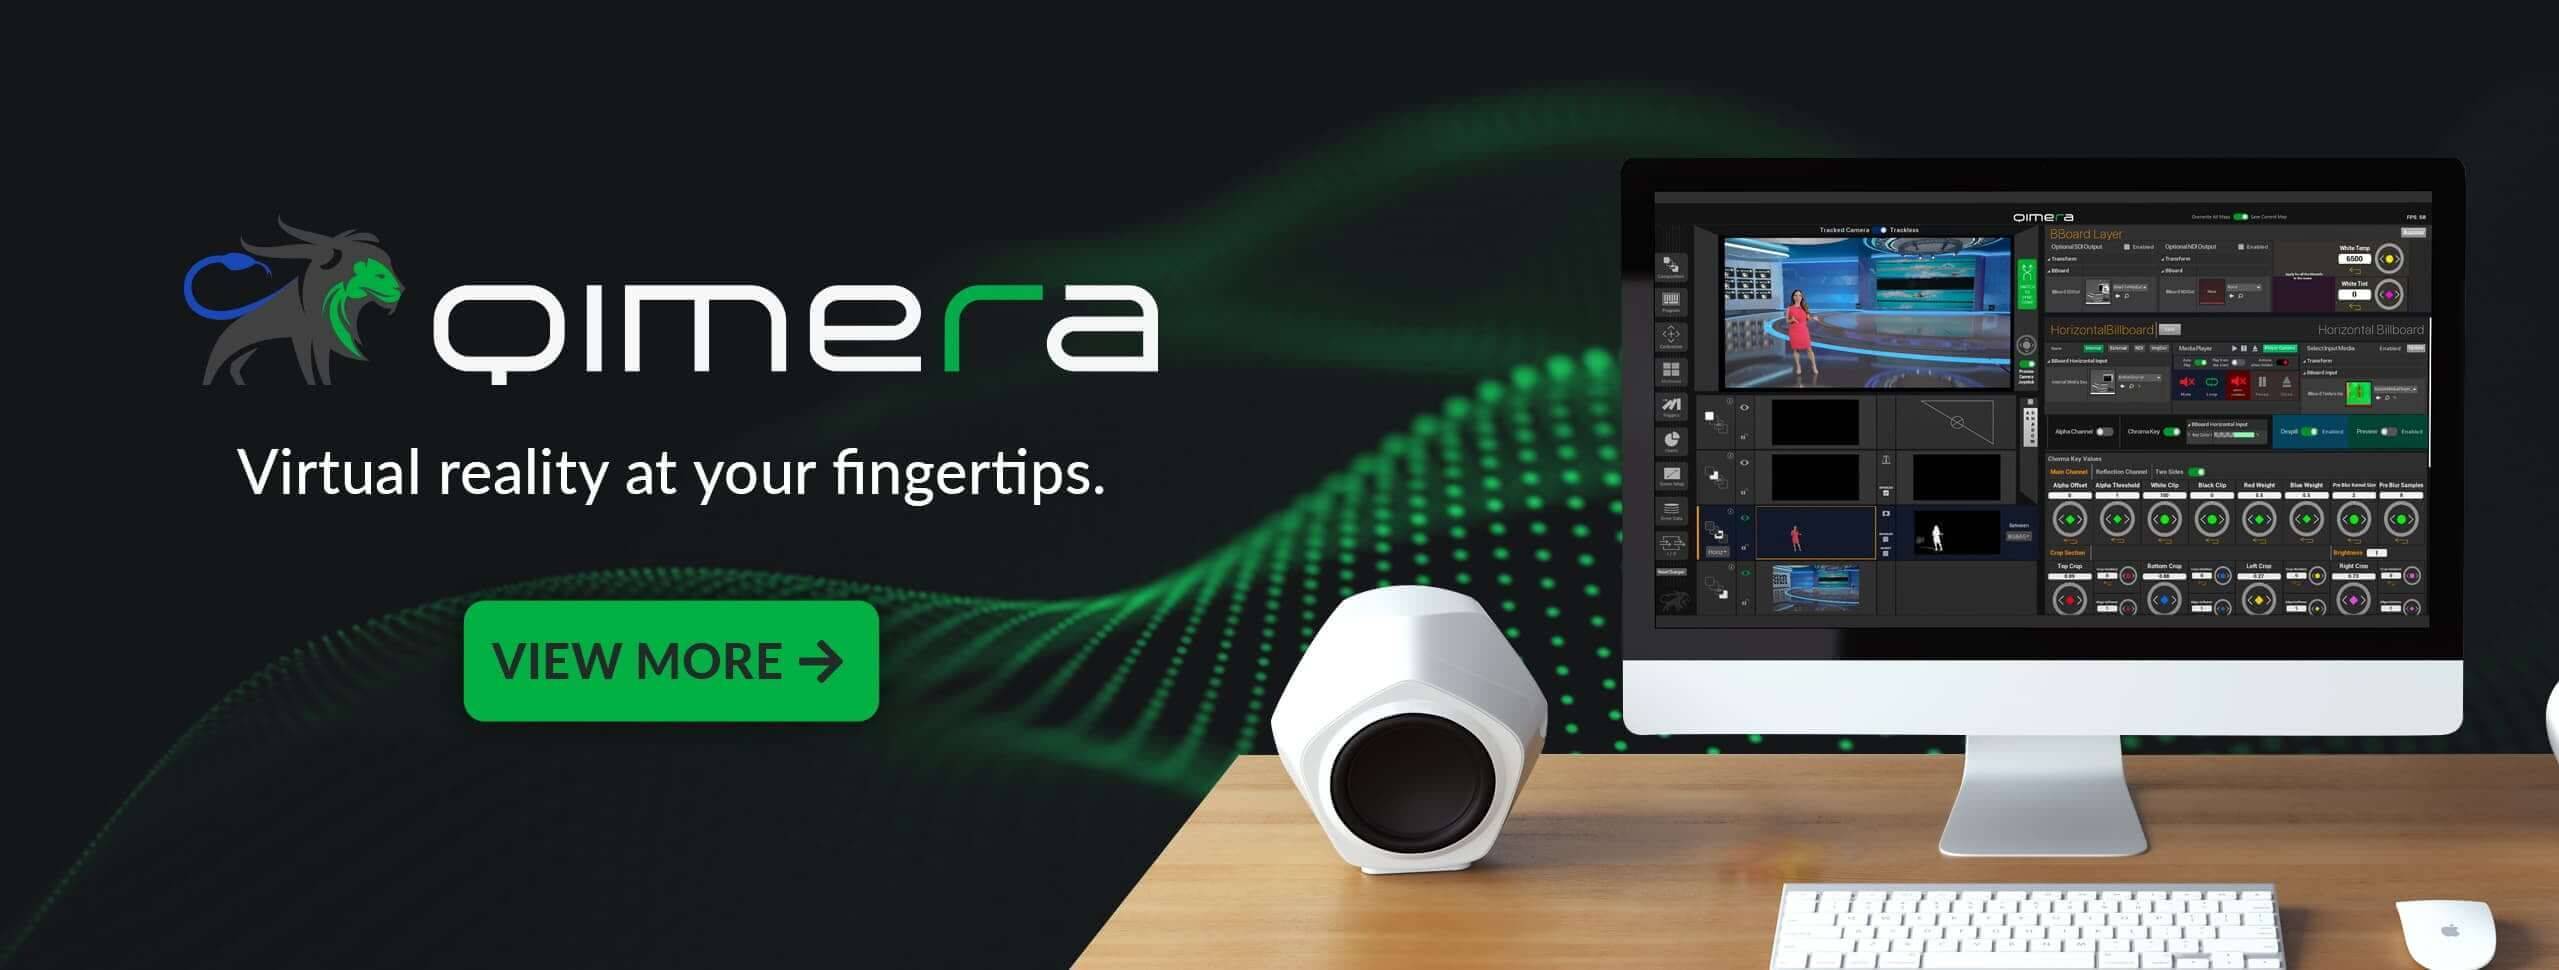 Banner Estación de trabajo de realidad virtual Qimera con software avanzado en pantalla, mostrando interfaz de usuario para edición VR en un monitor elegante, acompañado del eslogan 'Virtual reality at your fingertips' y botón 'VIEW MORE' para descubrir más.